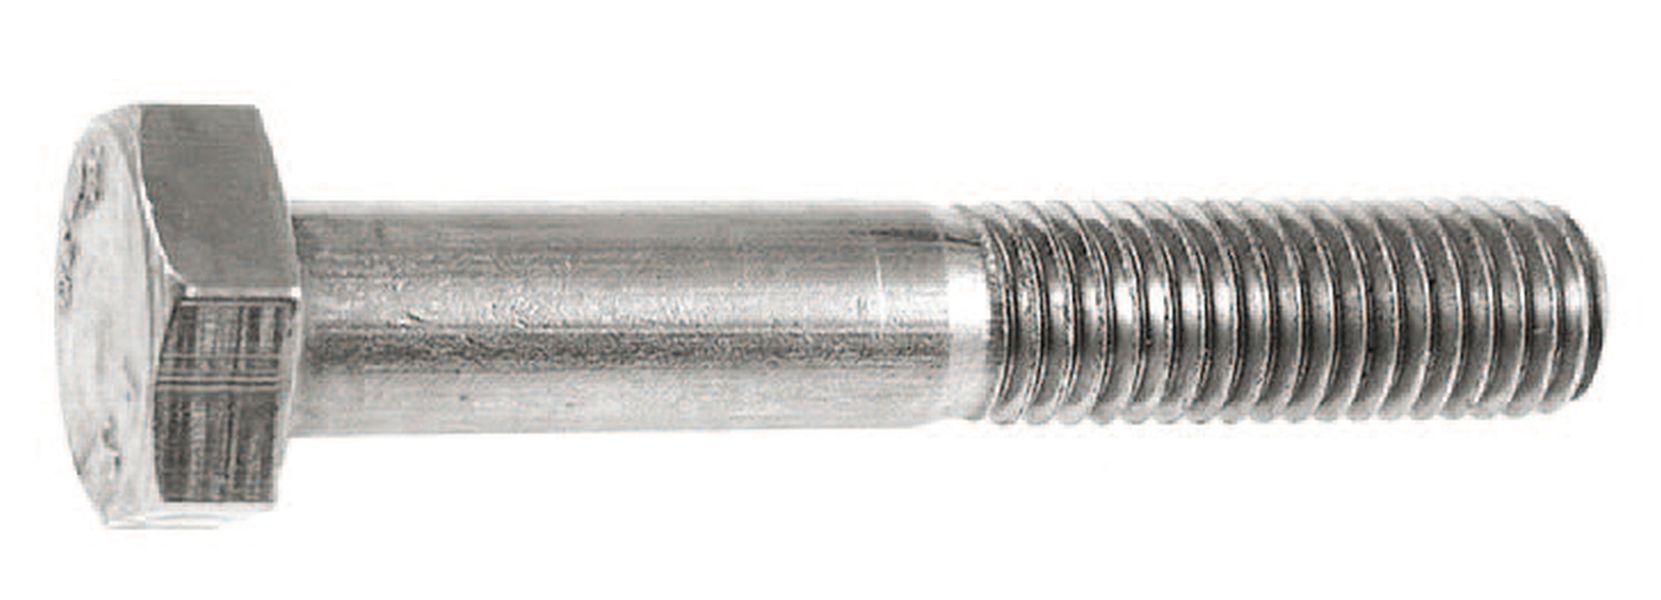 Six core screws - M5 x 25 mm - 7 pcs. - V4A - shaft